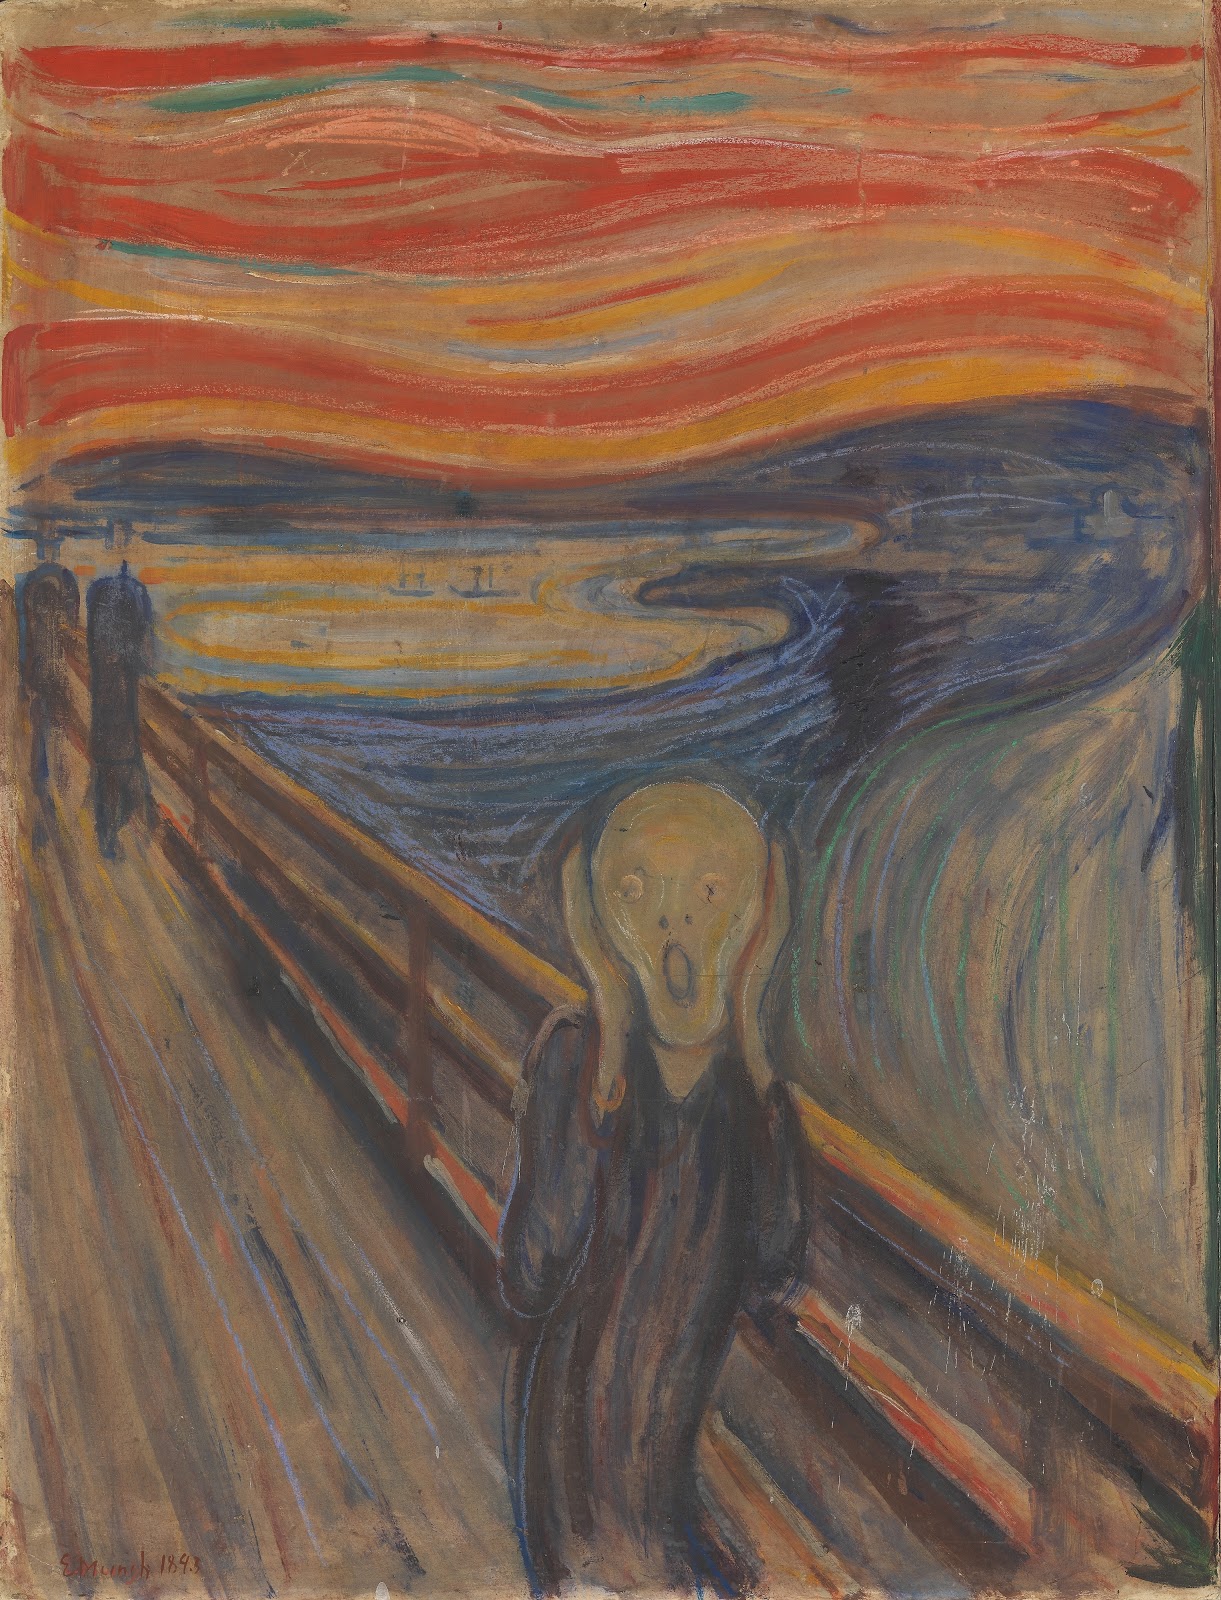 Edvard+Munch-1863-1944 (64).jpg